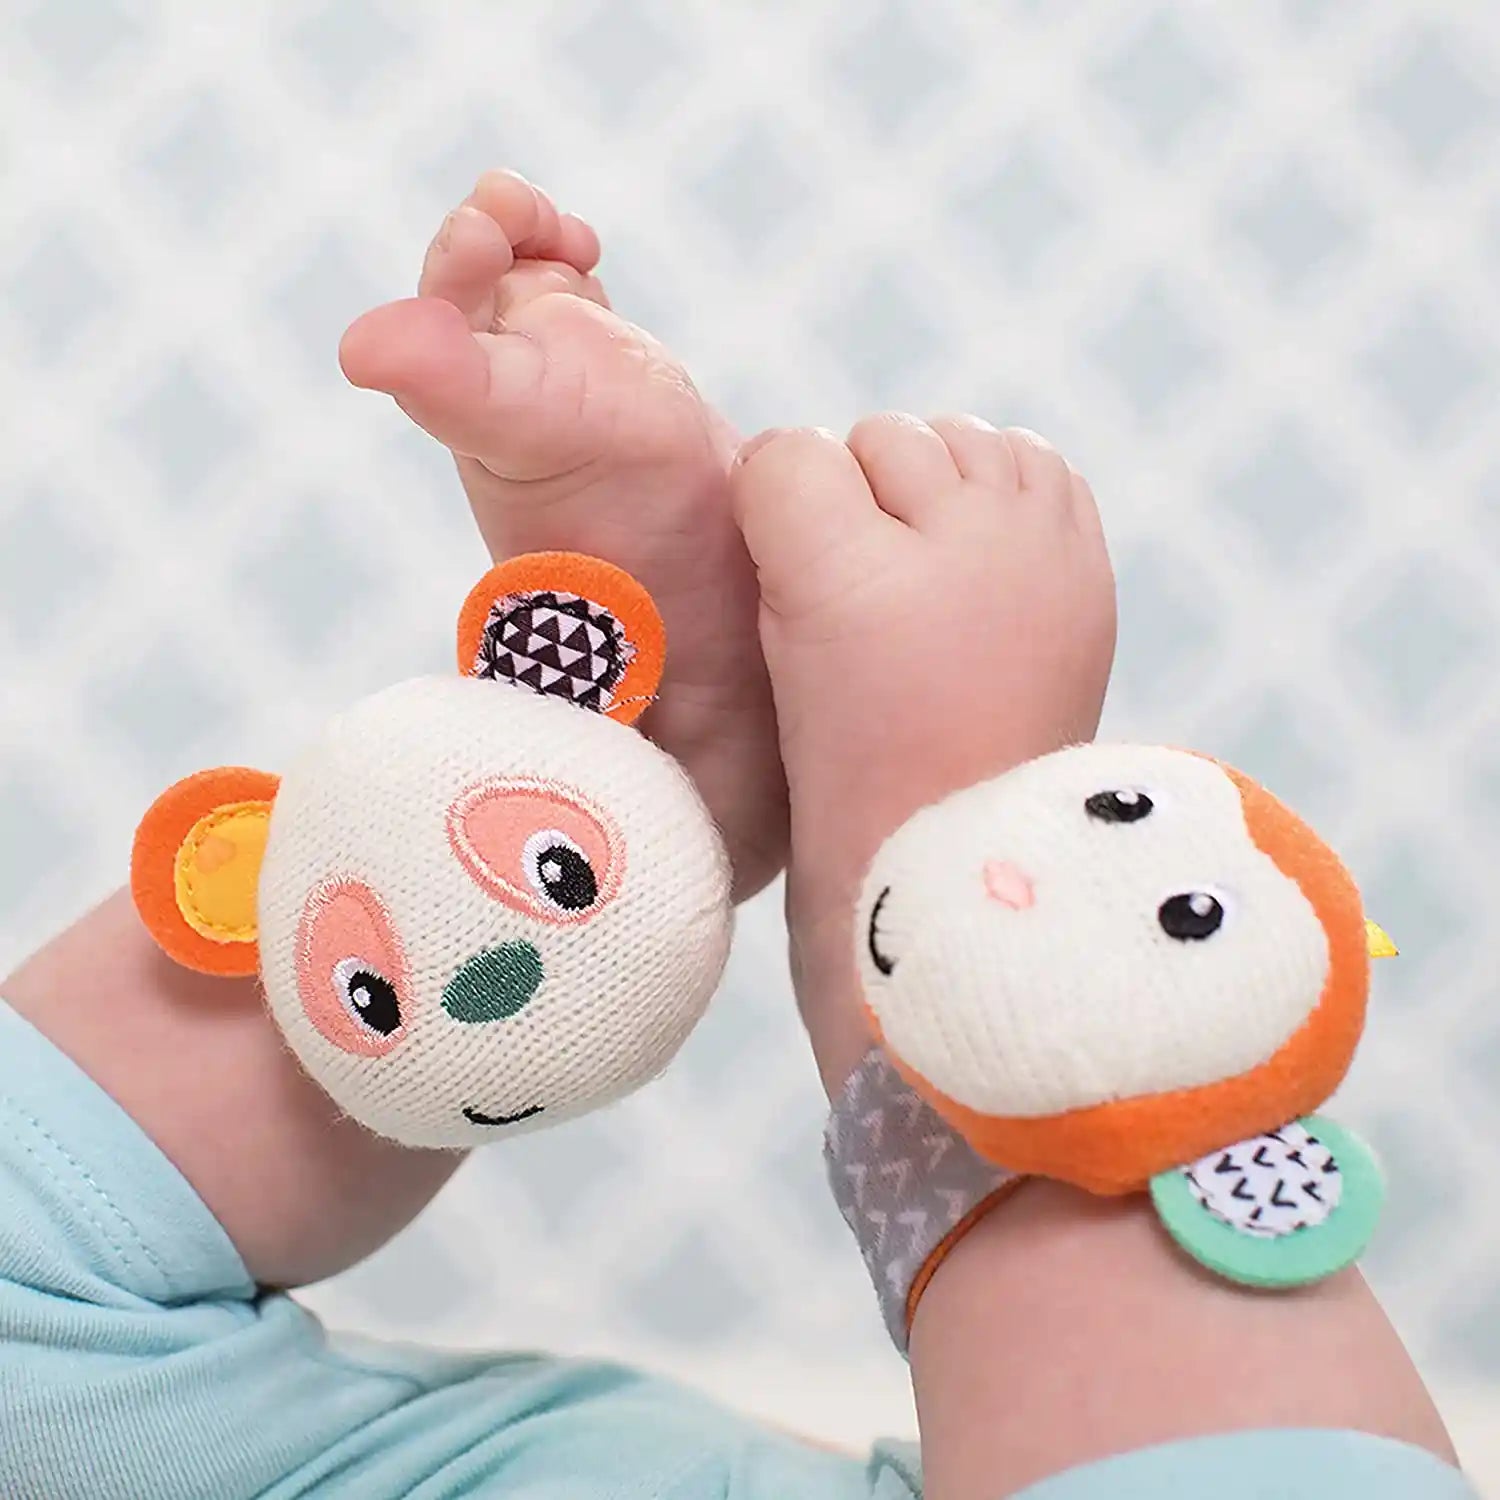 Infantino - Wrist Rattles - Monkey/Panda